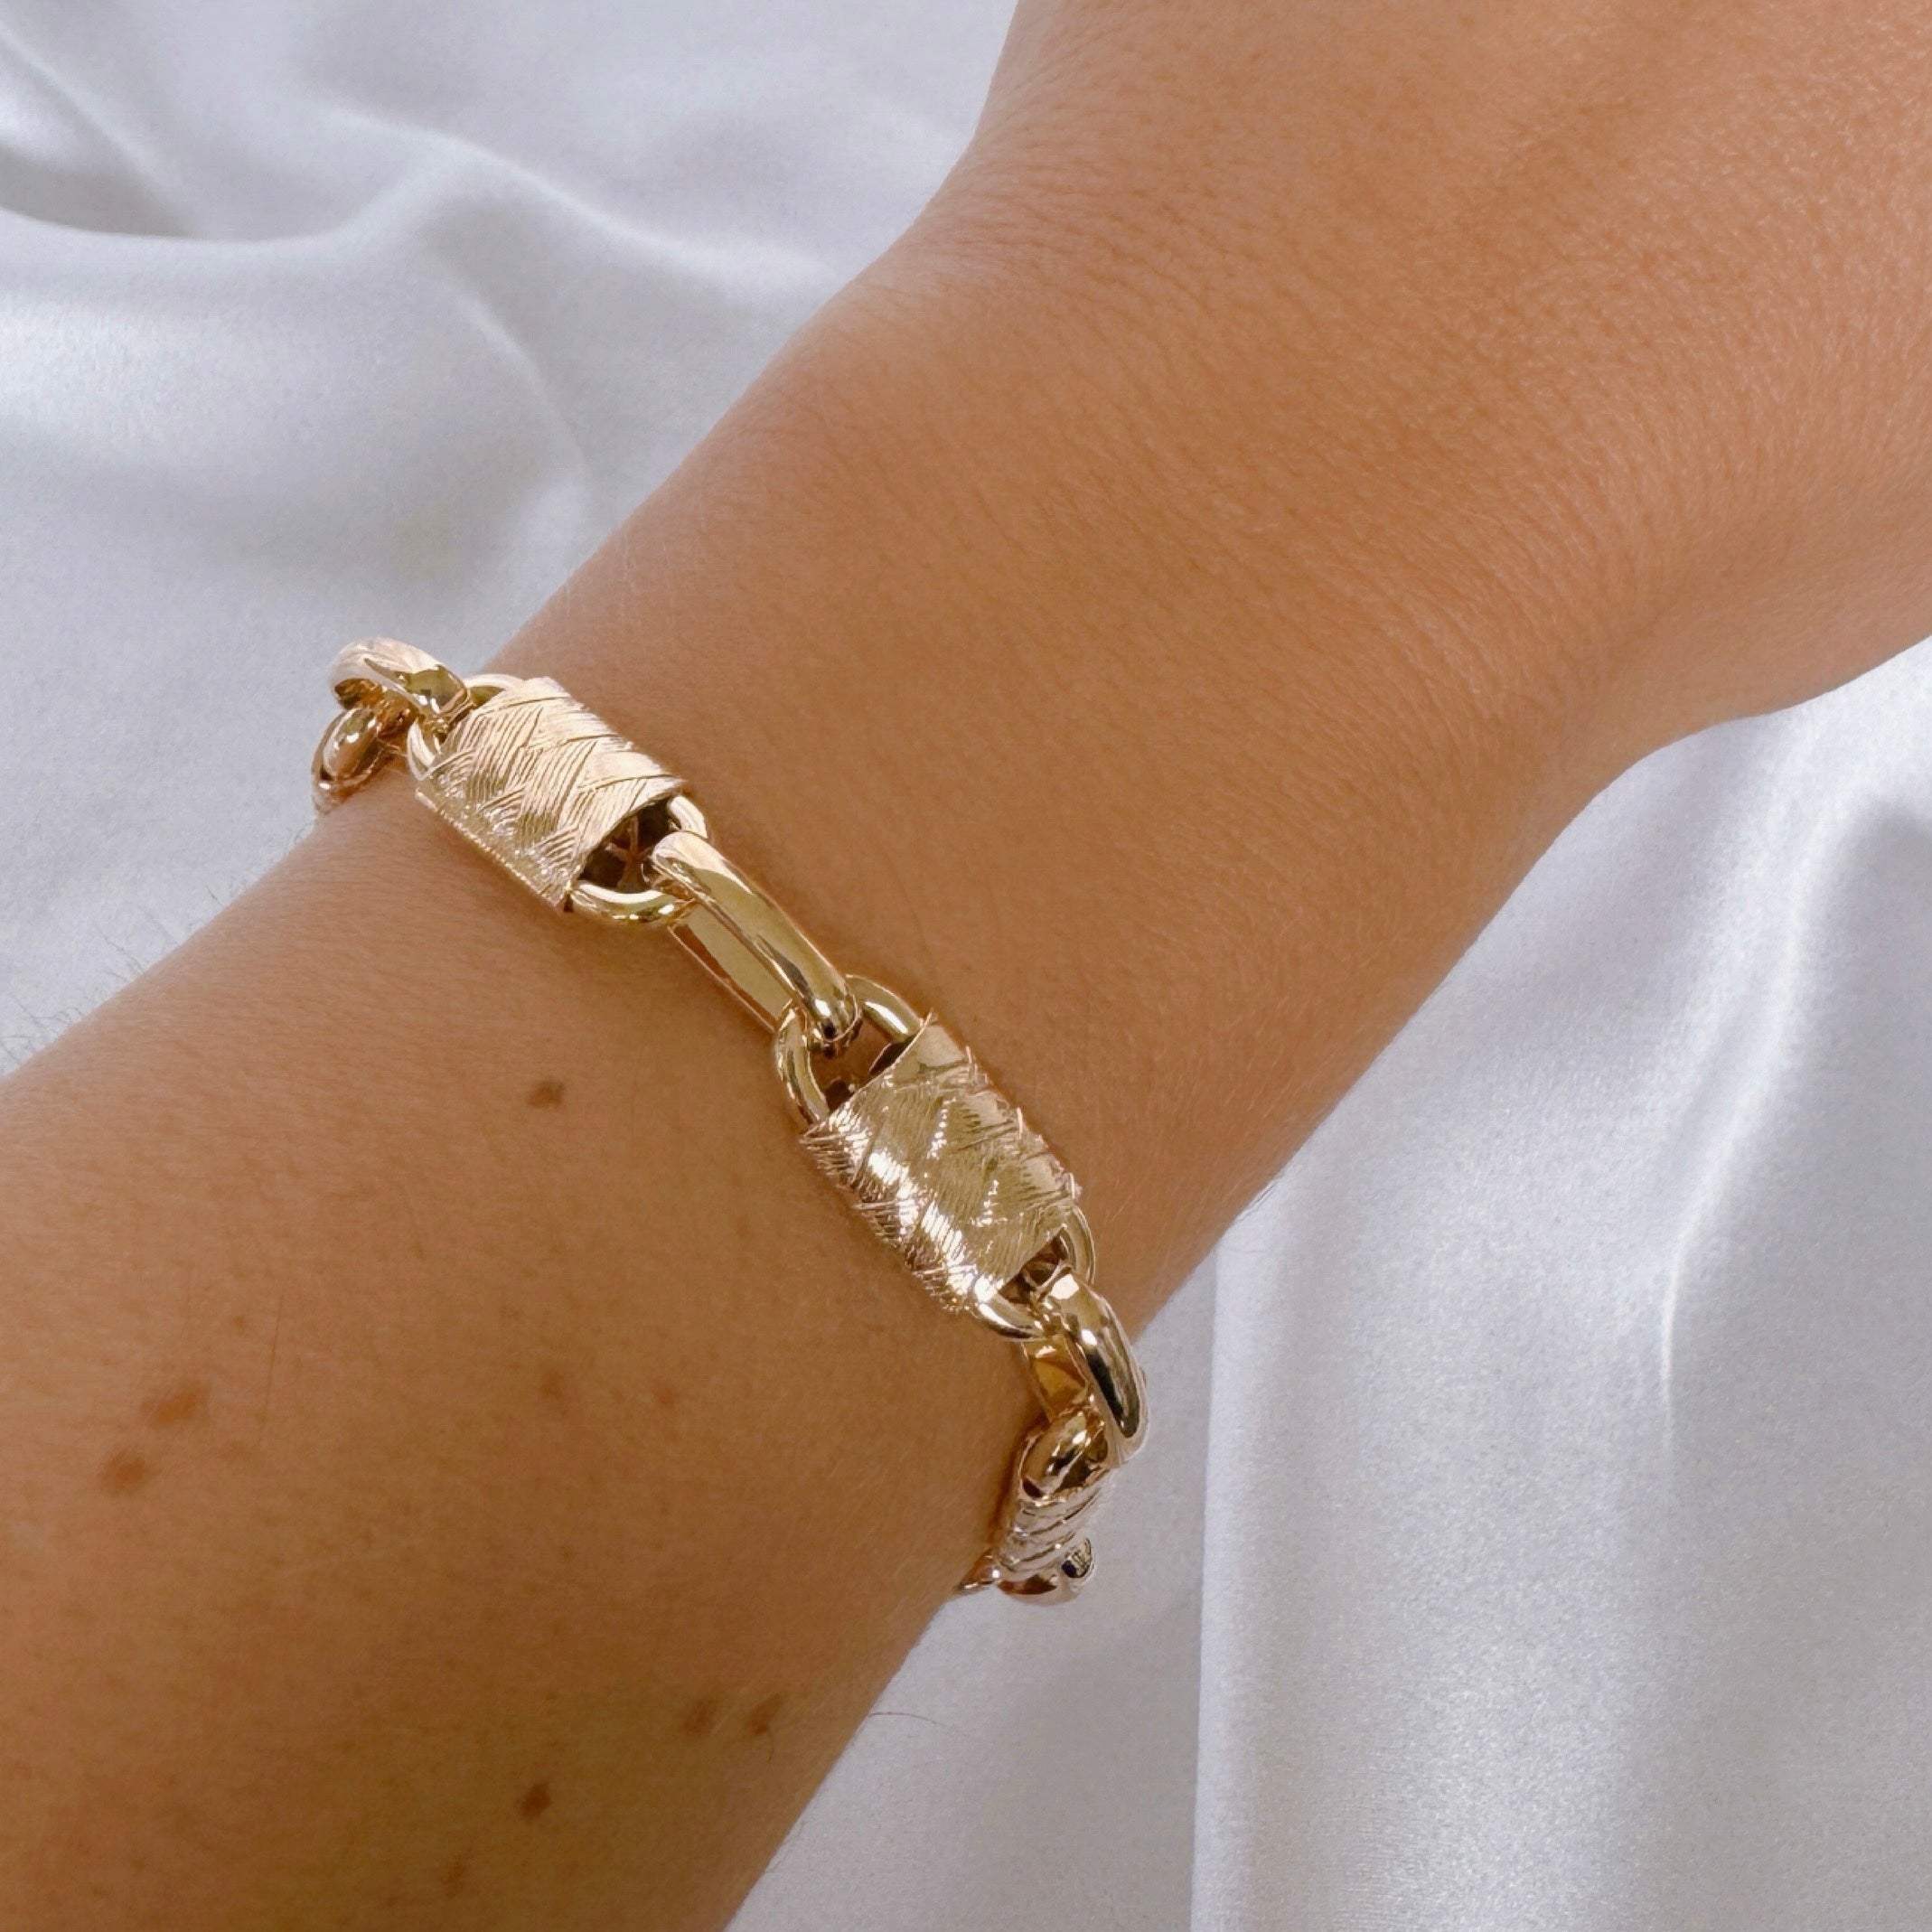 Gold-plated “Fortuna” bracelet